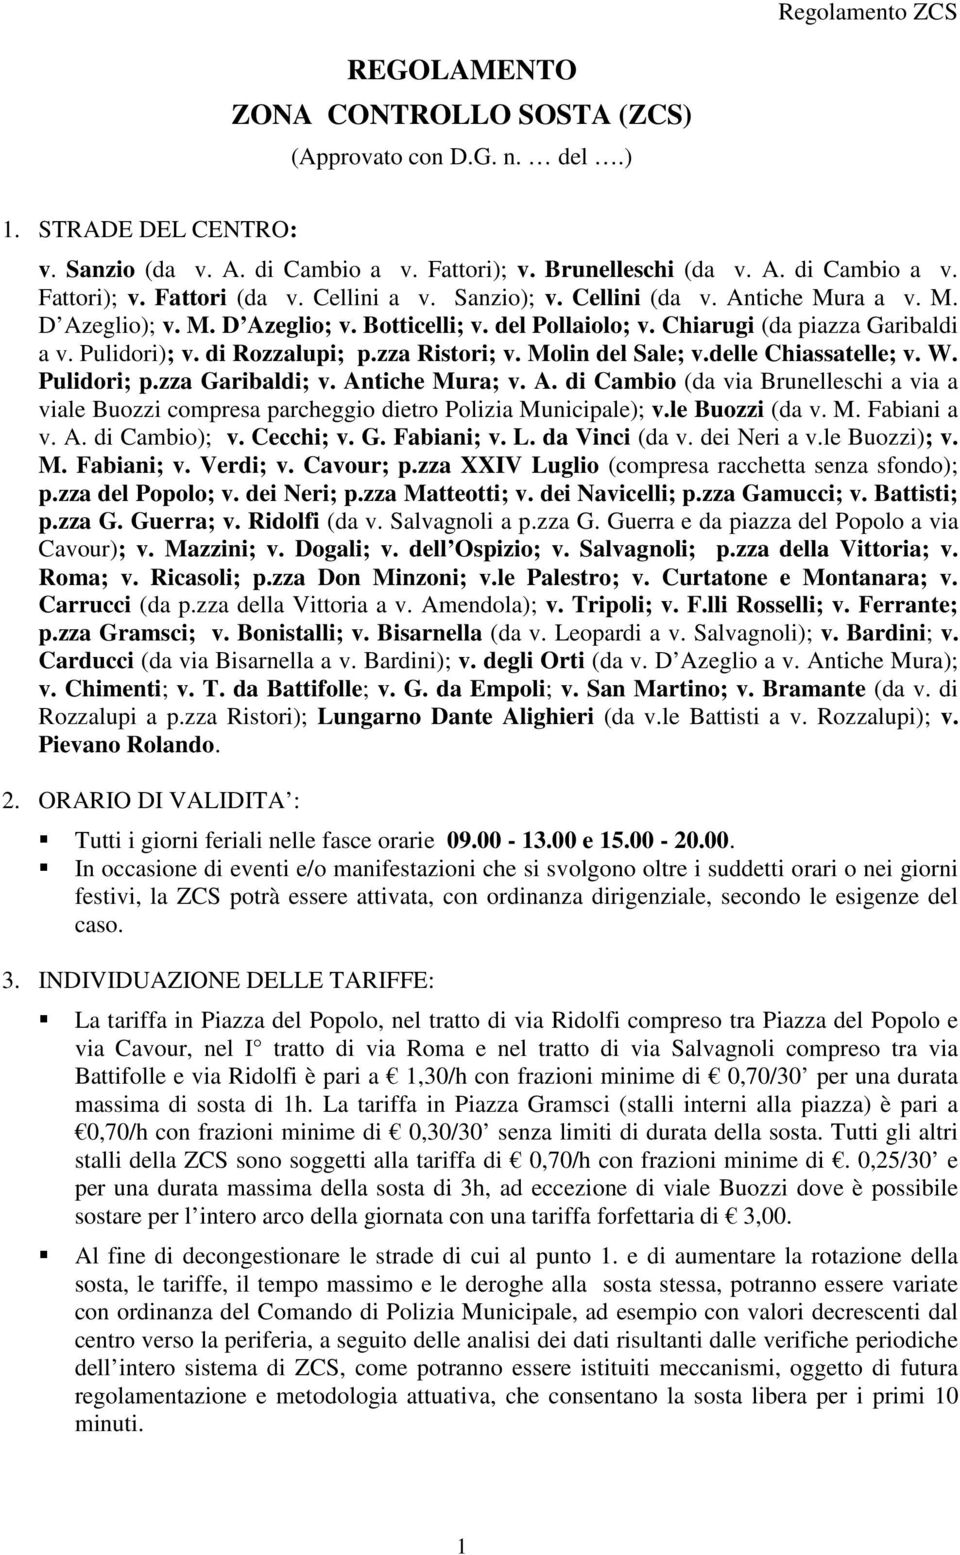 zza Ristori; v. Molin del Sale; v.delle Chiassatelle; v. W. Pulidori; p.zza Garibaldi; v. Antiche Mura; v. A. di Cambio (da via Brunelleschi a via a viale Buozzi compresa parcheggio dietro Polizia Municipale); v.